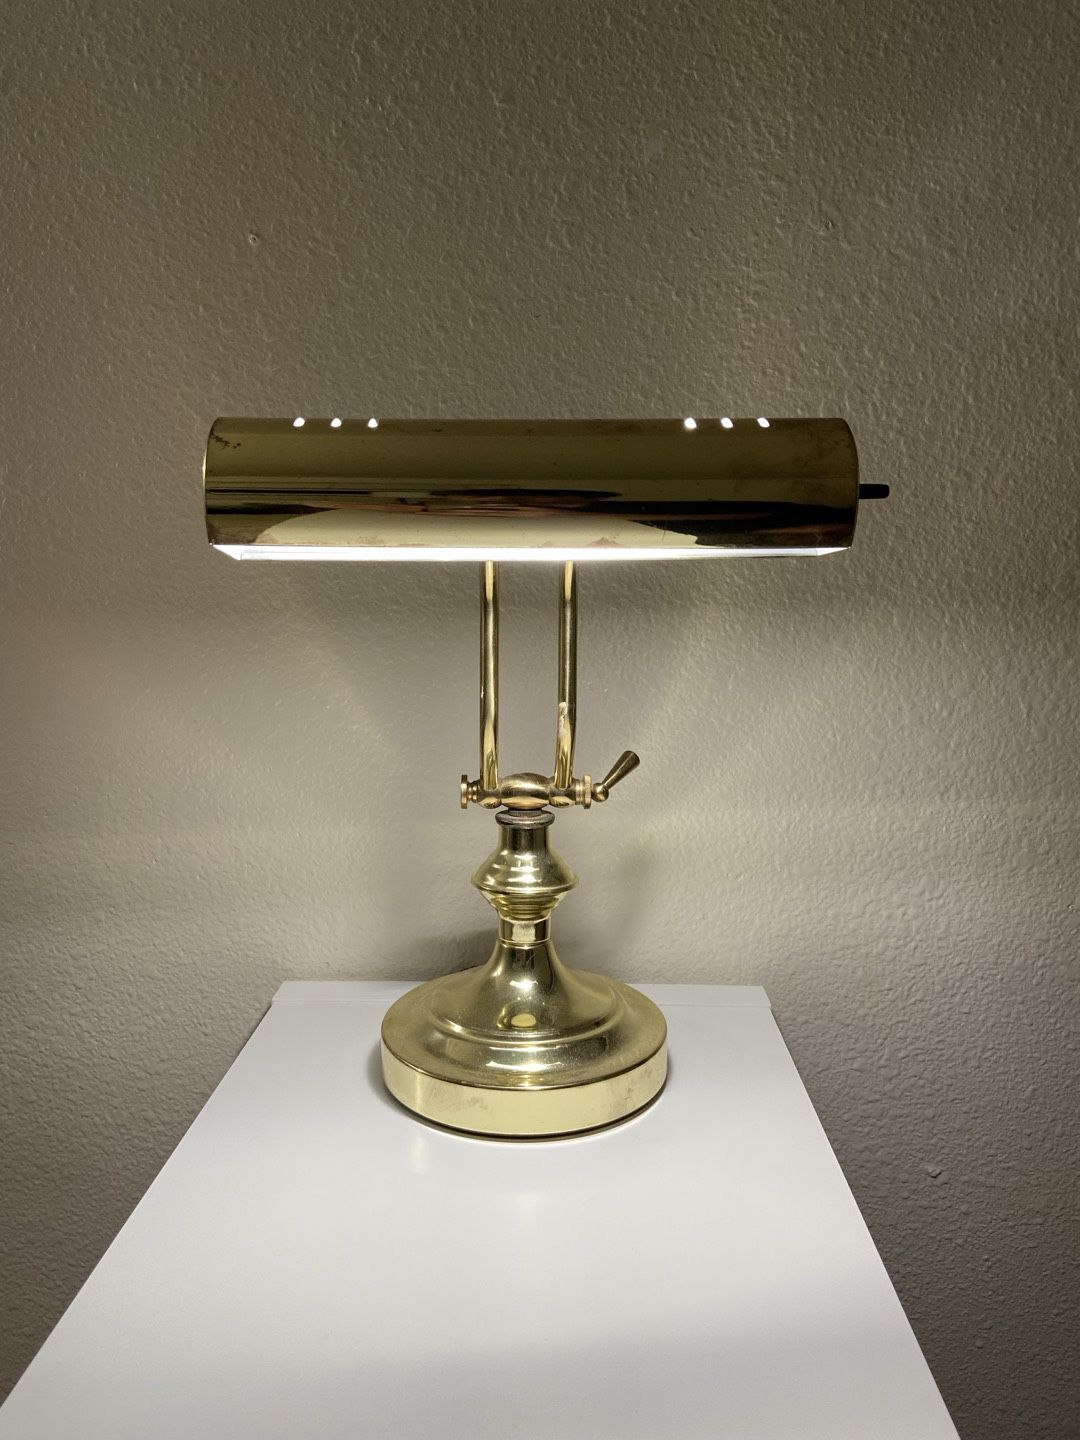 Antique Mid Century Desk Lamp